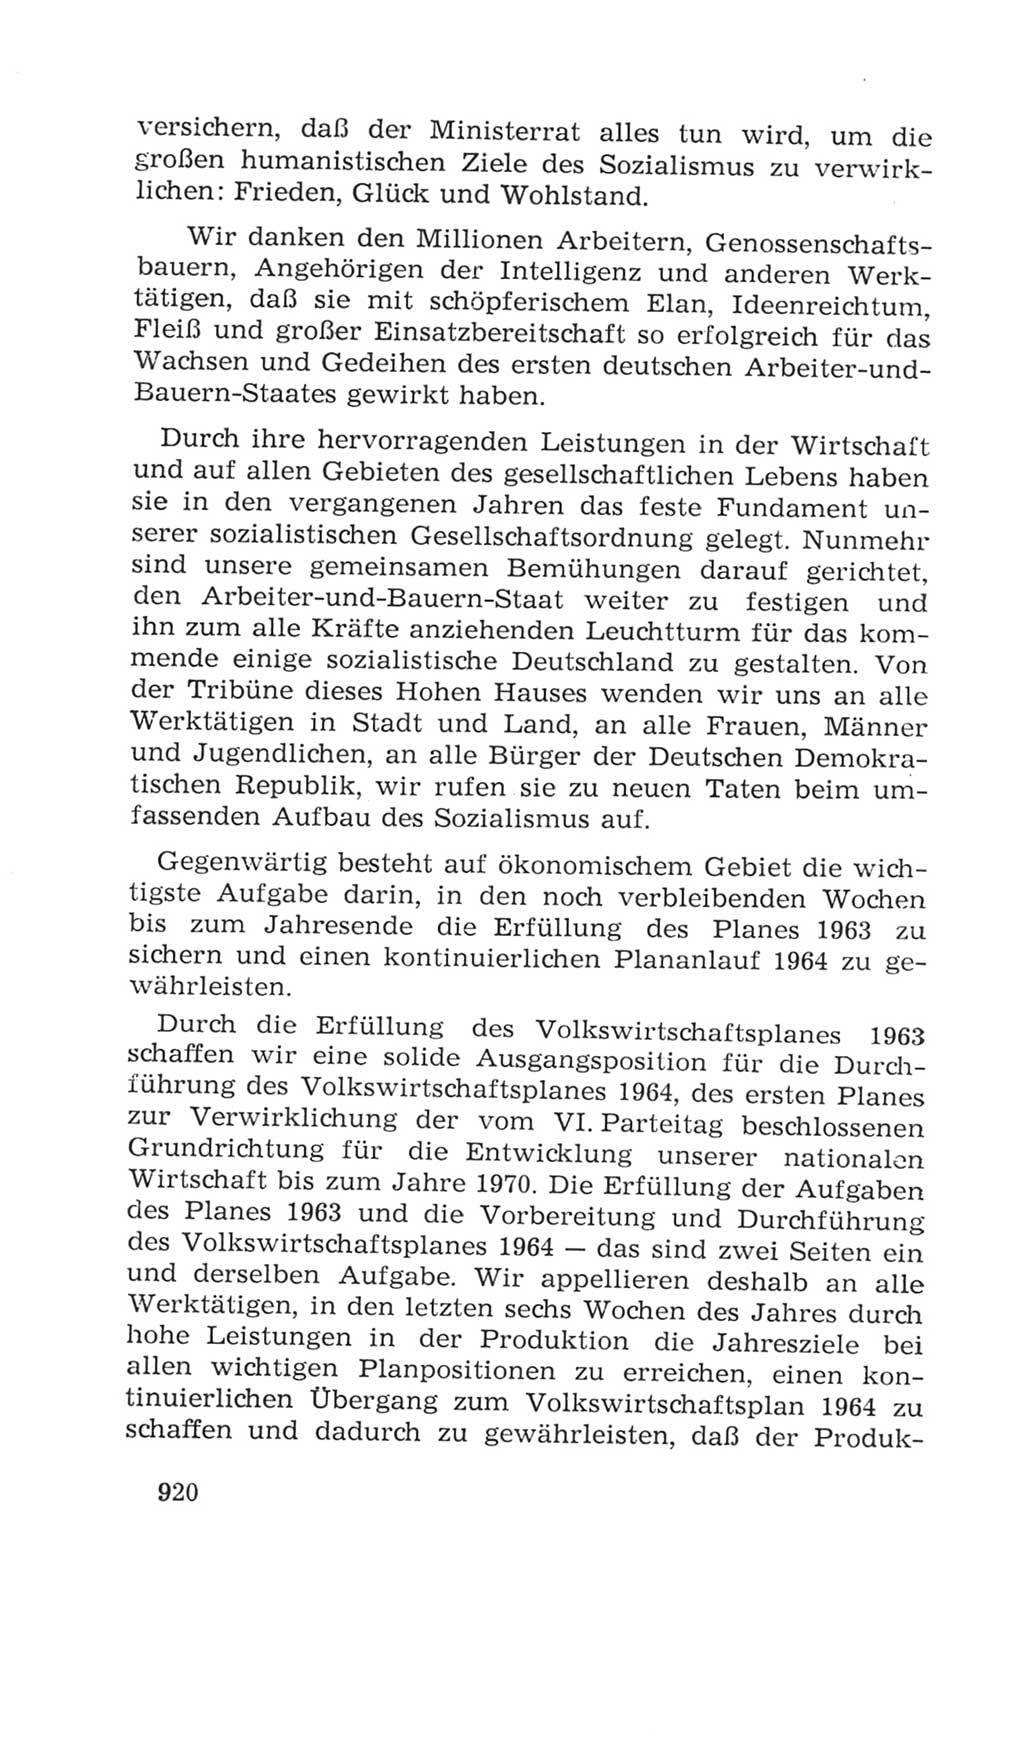 Volkskammer (VK) der Deutschen Demokratischen Republik (DDR), 4. Wahlperiode 1963-1967, Seite 920 (VK. DDR 4. WP. 1963-1967, S. 920)